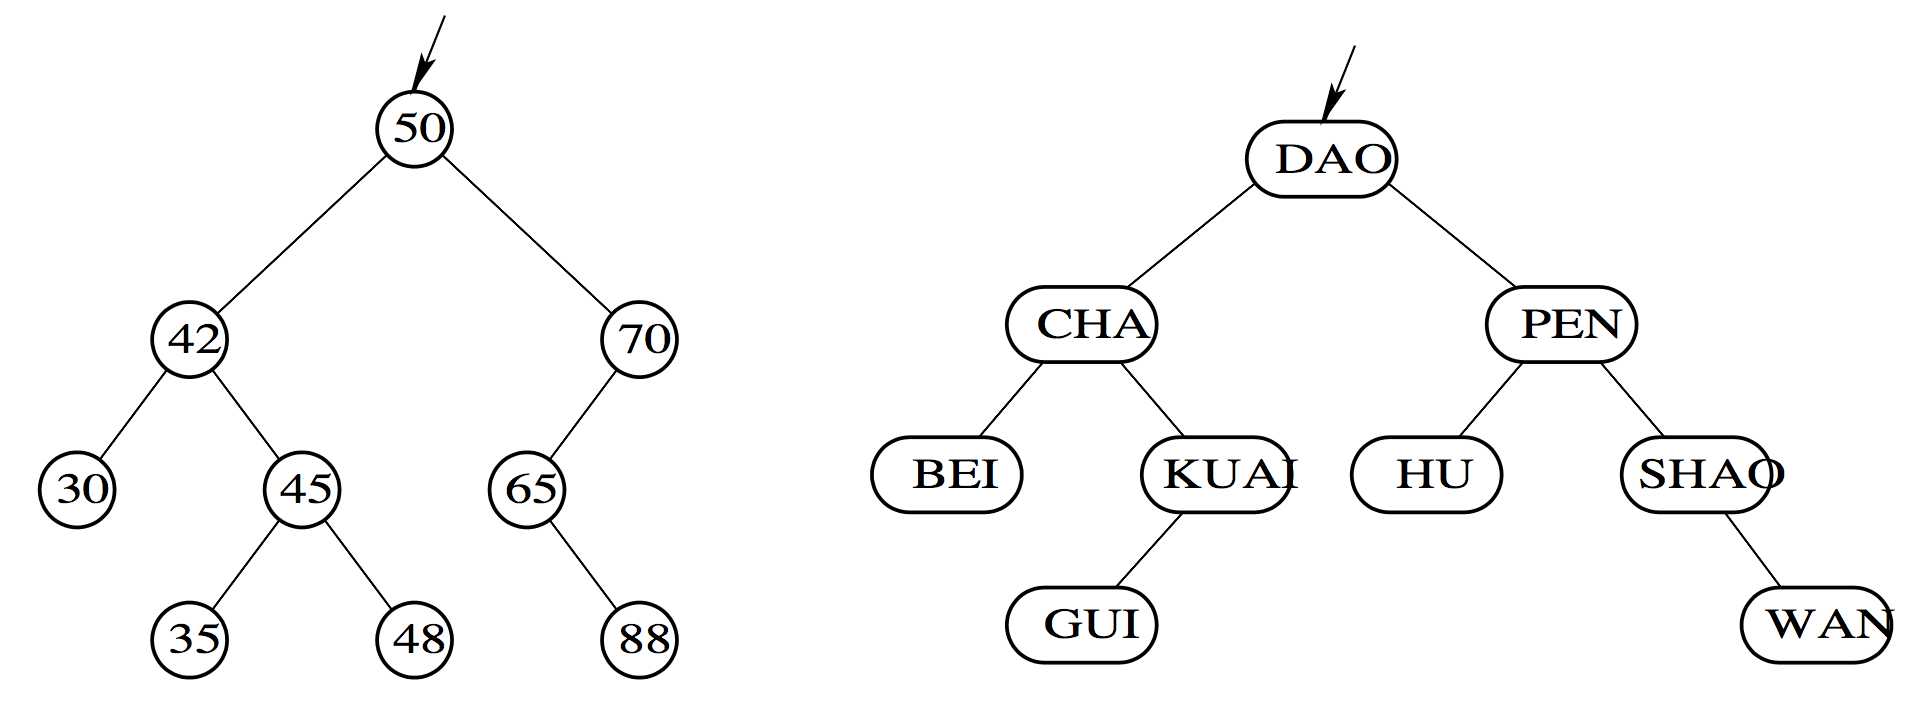 数据结构-动态查找表-二叉排序树